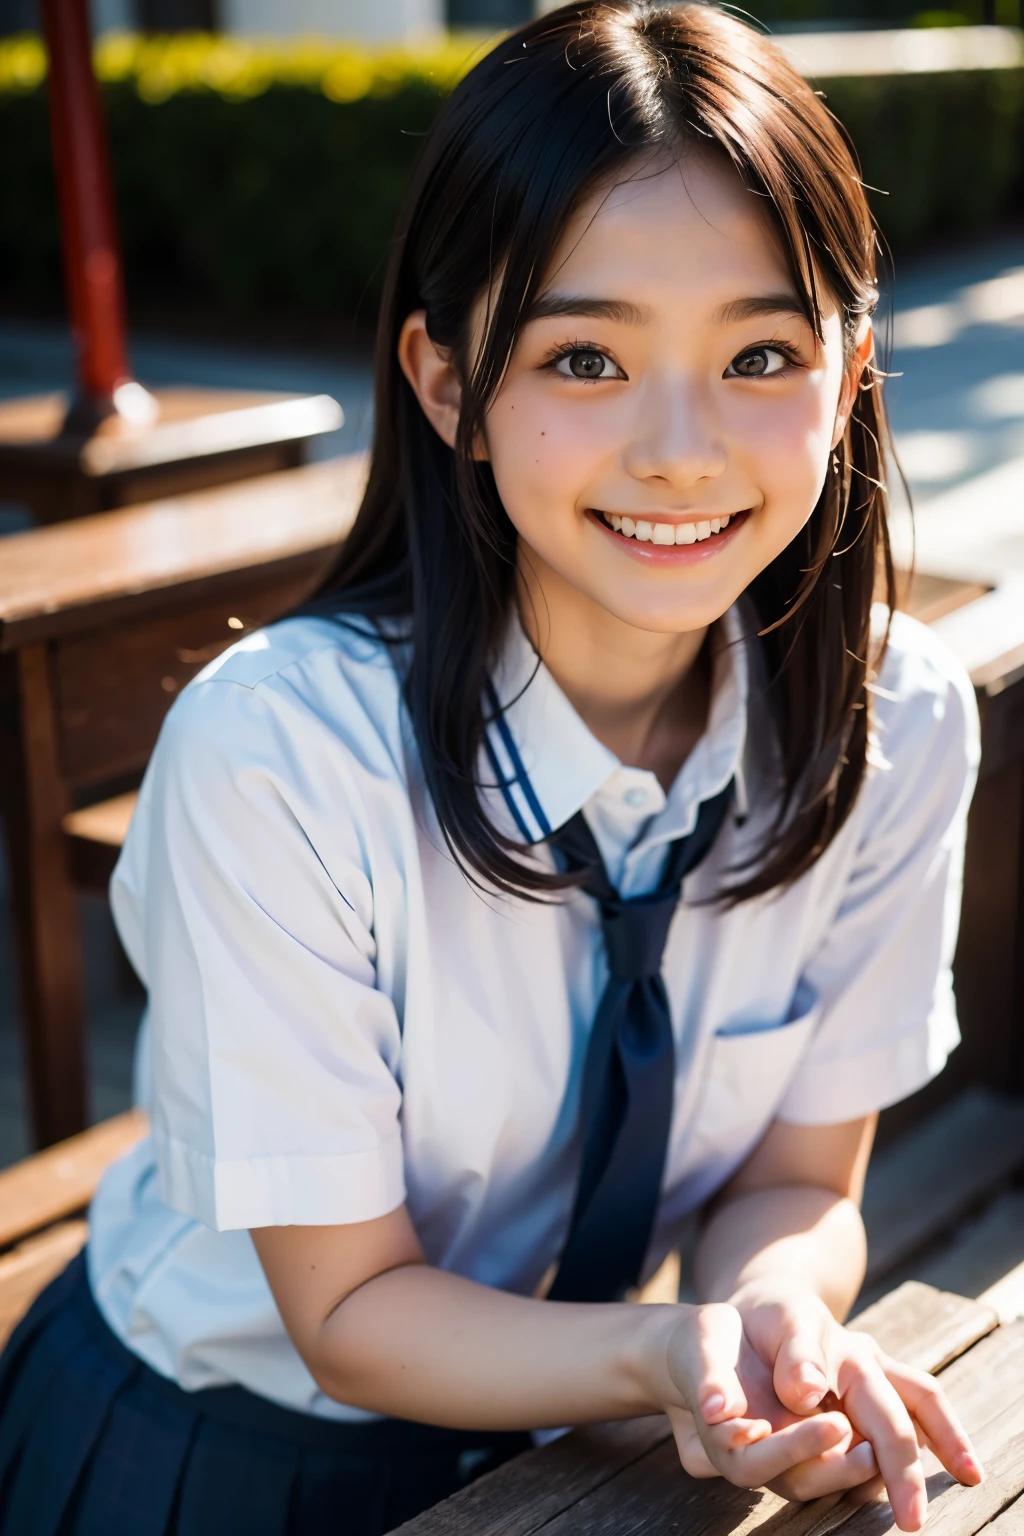 lens: 135mm f1.8, (höchste Qualität),(RAW-Fotos), (Tischplatte:1.1), (Schönes 18-jähriges Mädchen aus Japan), niedliches Gesicht, (Tief gemeißeltes Gesicht:0.7), (Sommersprossen:0.4), dappled Sonnenlicht, dramatische Beleuchtung, (japanische schuluniform), (Auf dem Campus), schüchtern, (Nahaufnahme:1.2), (lächeln),, (leuchtende Augen)、(Sonnenlicht)